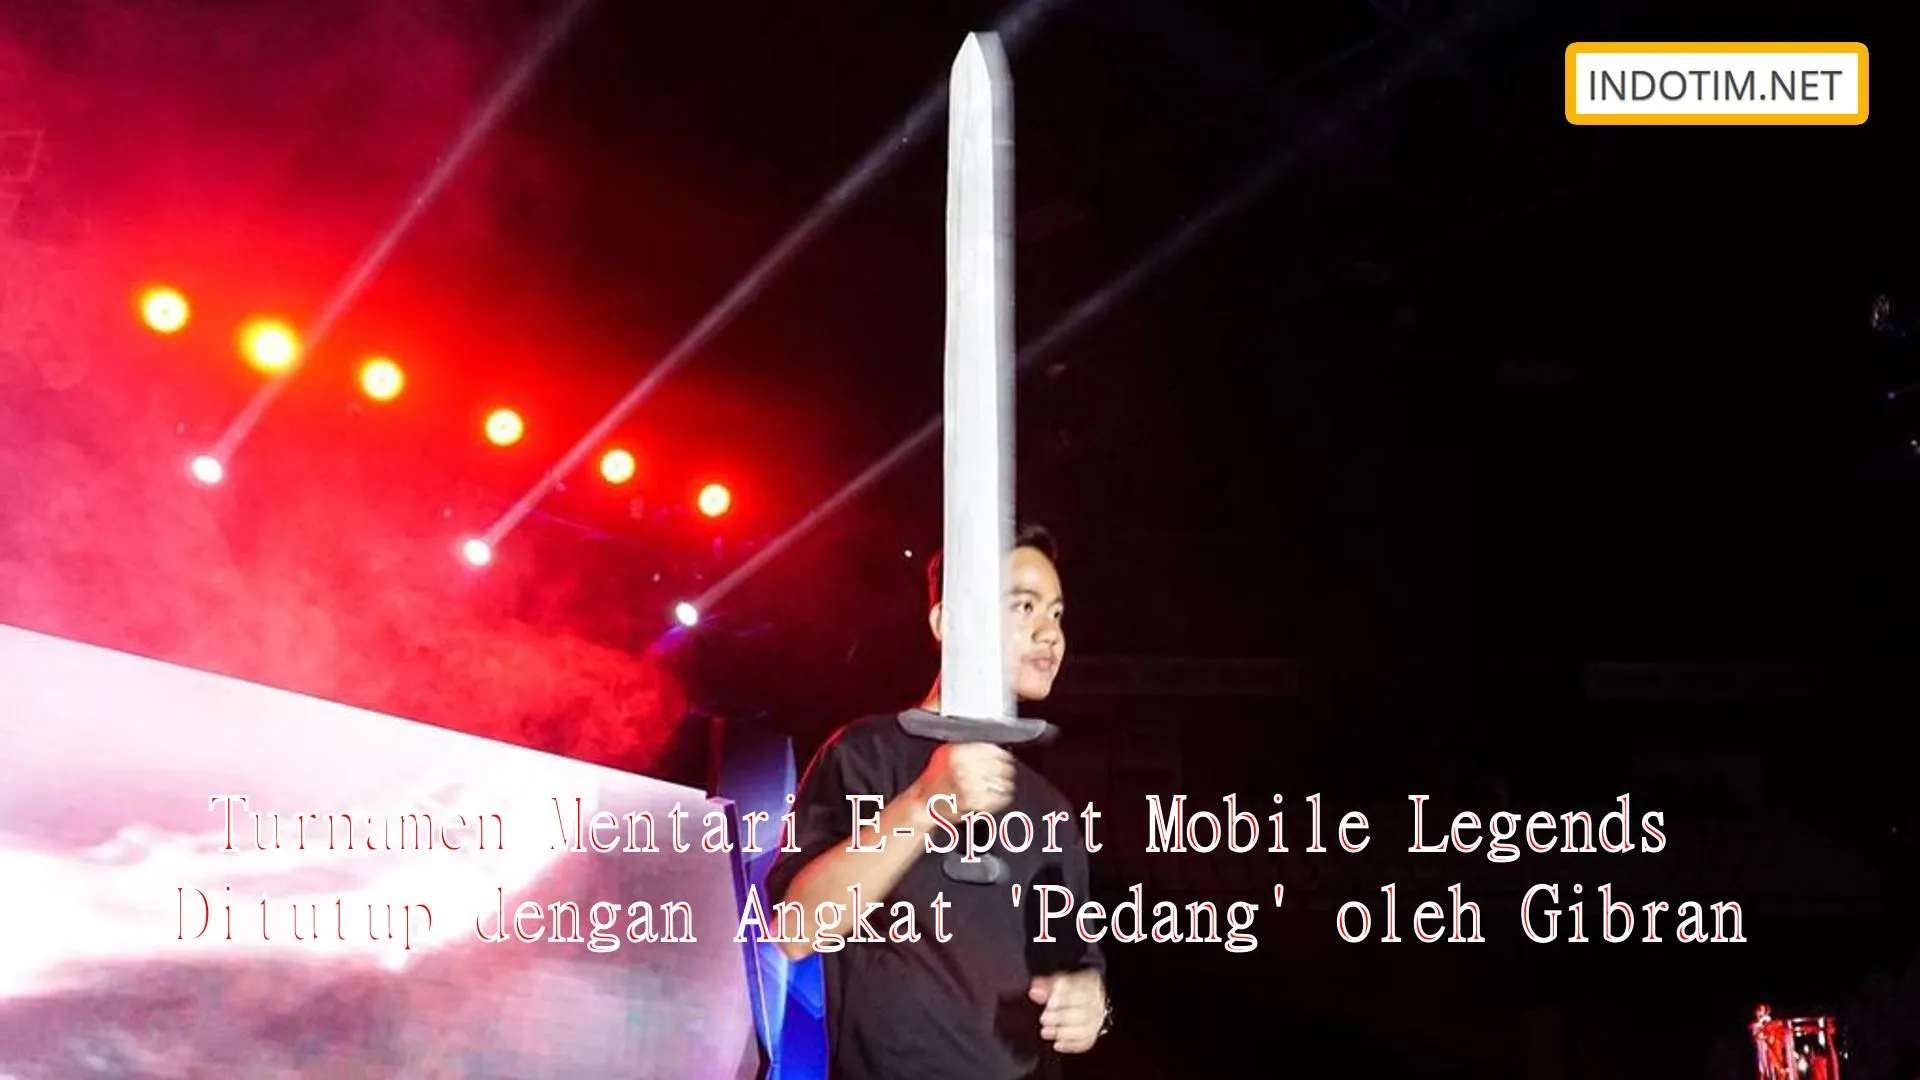 Turnamen Mentari E-Sport Mobile Legends Ditutup dengan Angkat 'Pedang' oleh Gibran